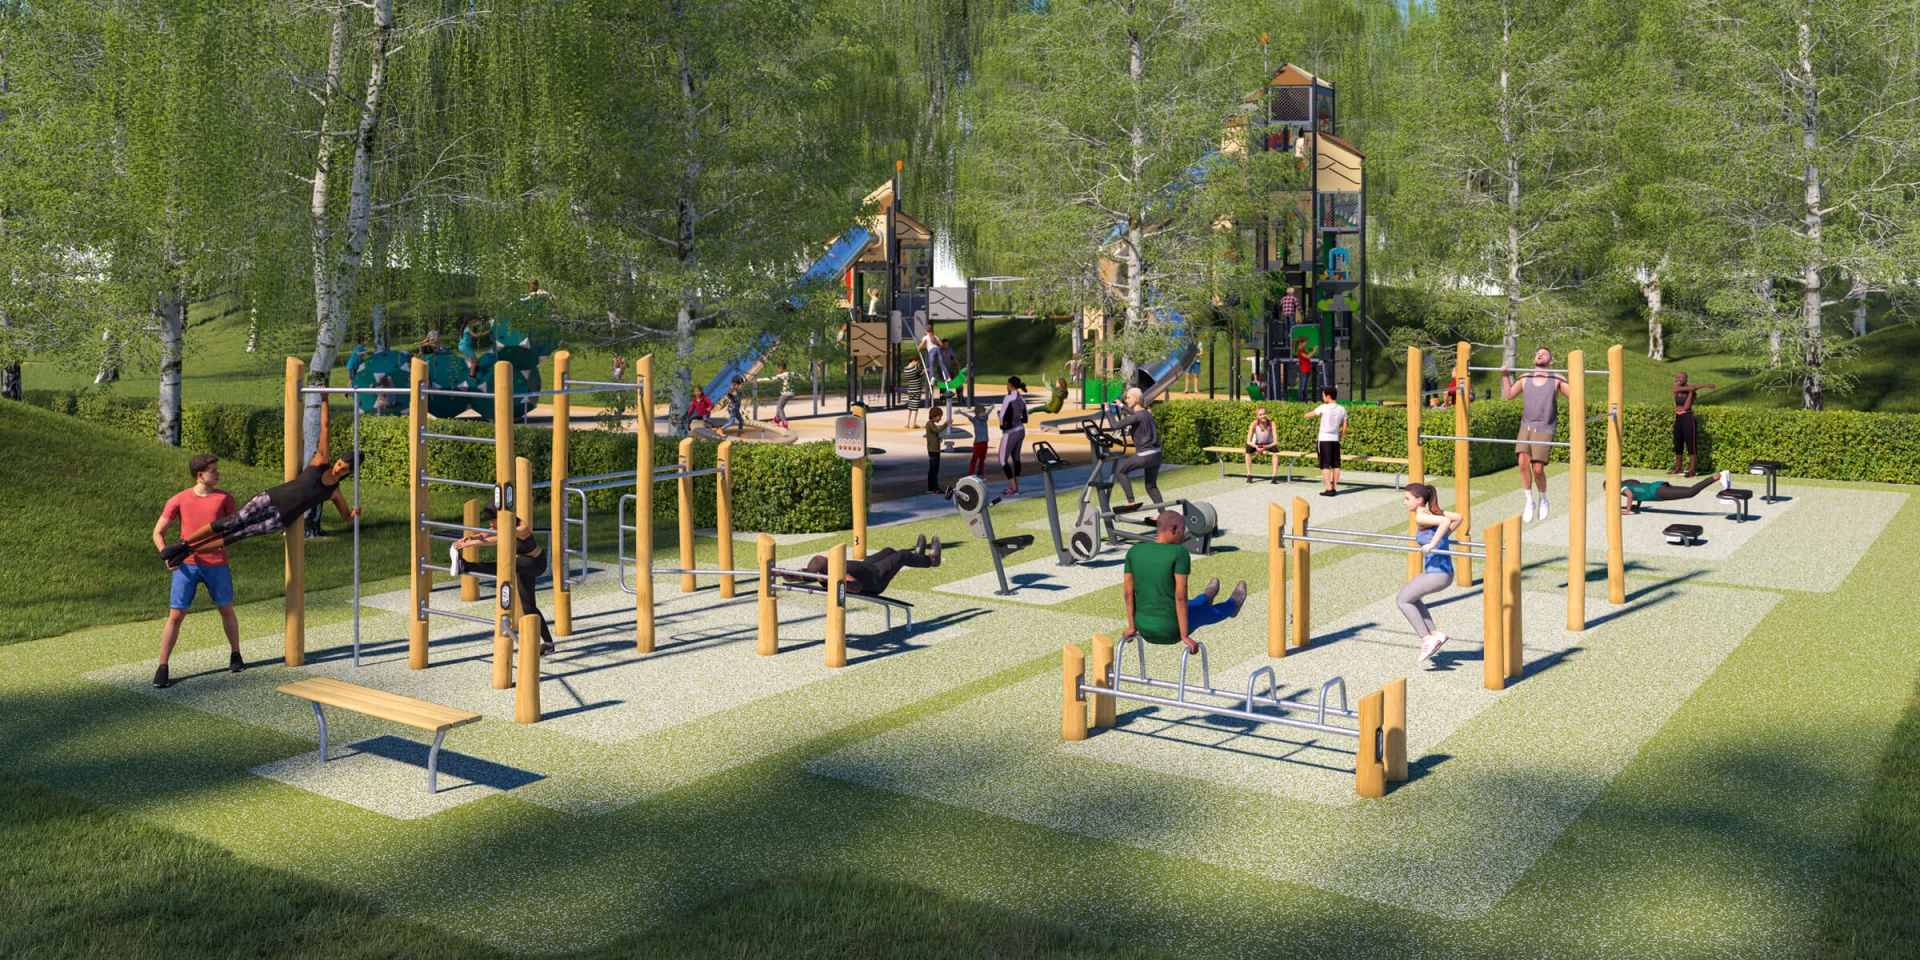 Idée de design pour une aire de fitness en bois avec une aire de jeux pour les enfants